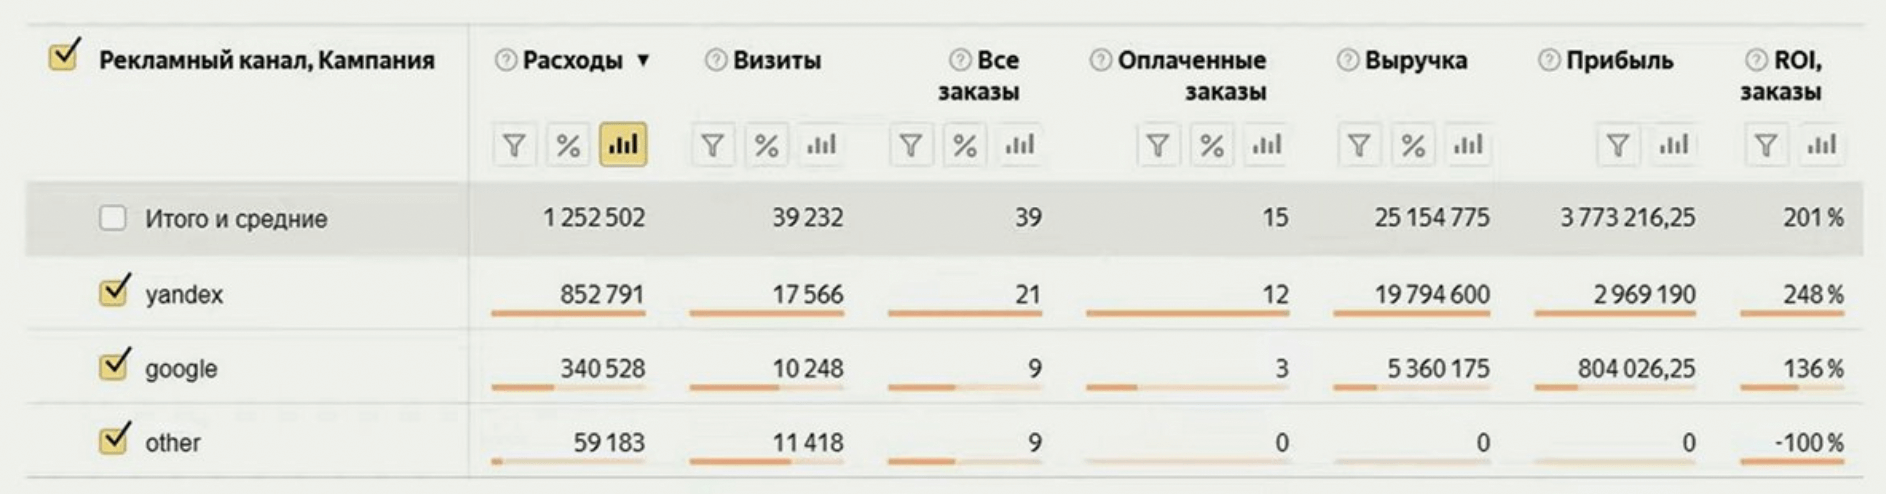 Таблица из «Яндекс.Метрики» с эффективностью рекламных каналов